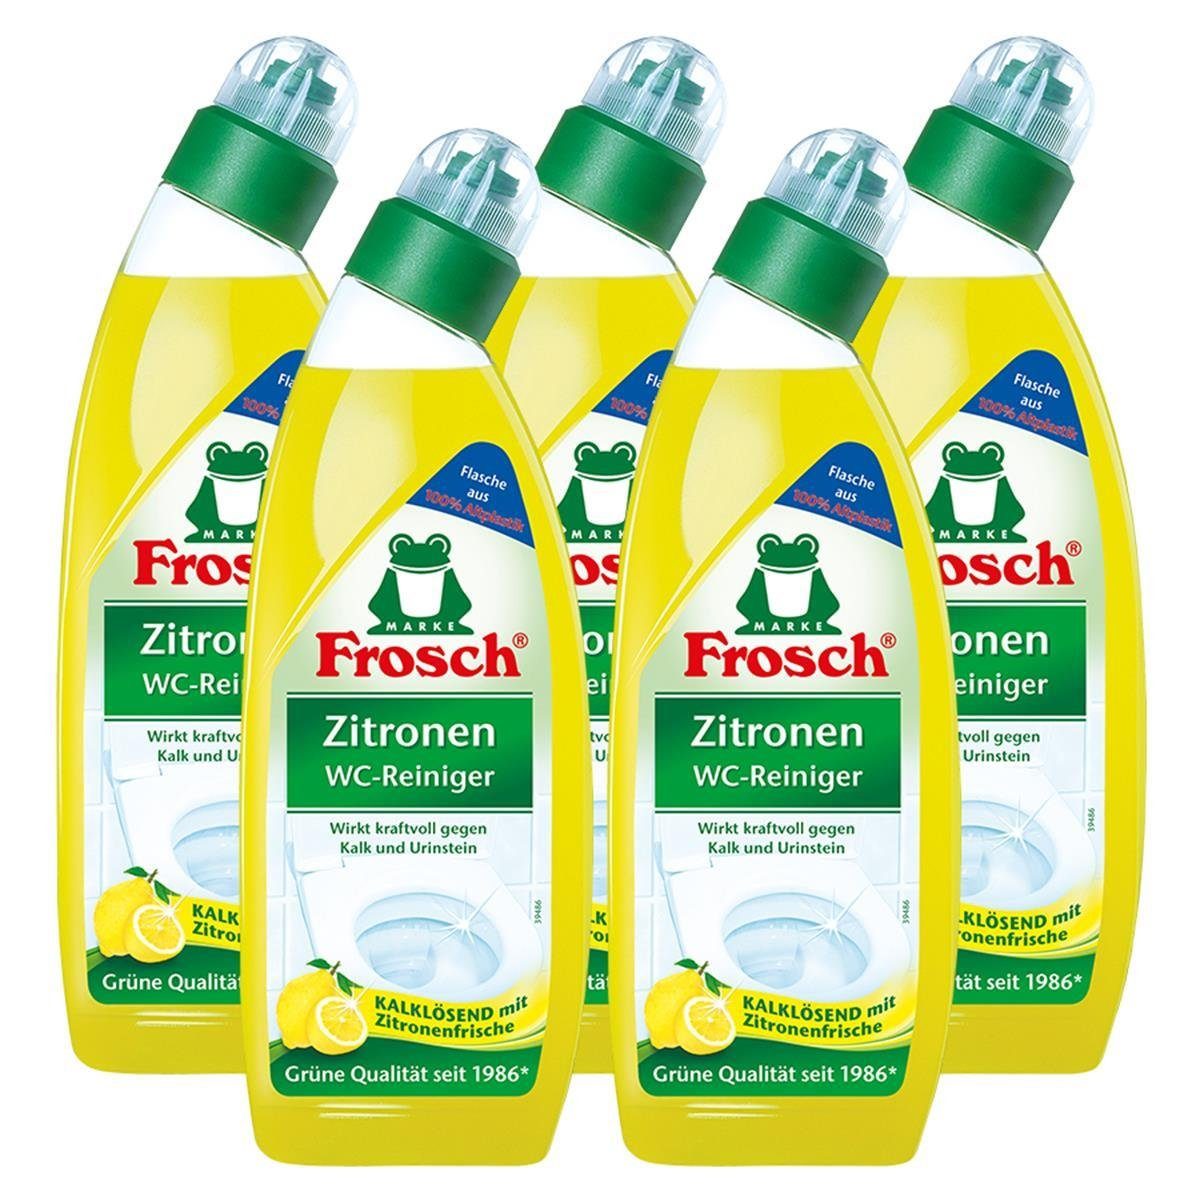 FROSCH 5x Frosch - Zitrone 750 ml Zitronen Kalklösend mit WC-Reiniger WC-Reiniger